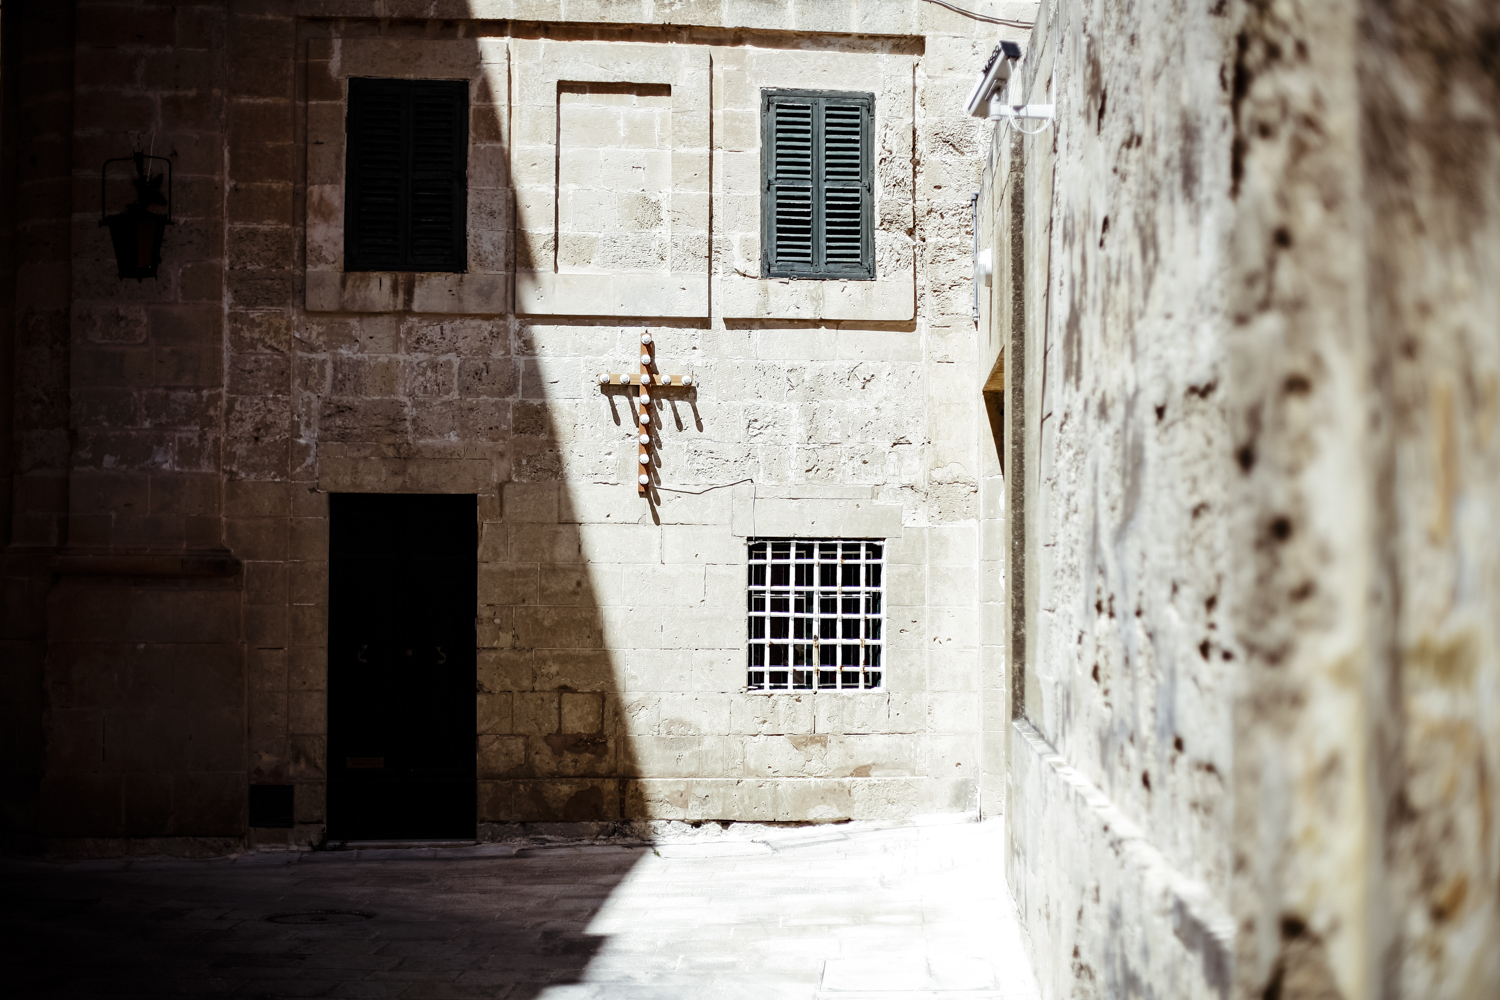 Malta ©Carlo Perazzolo/carloperazzolo.com